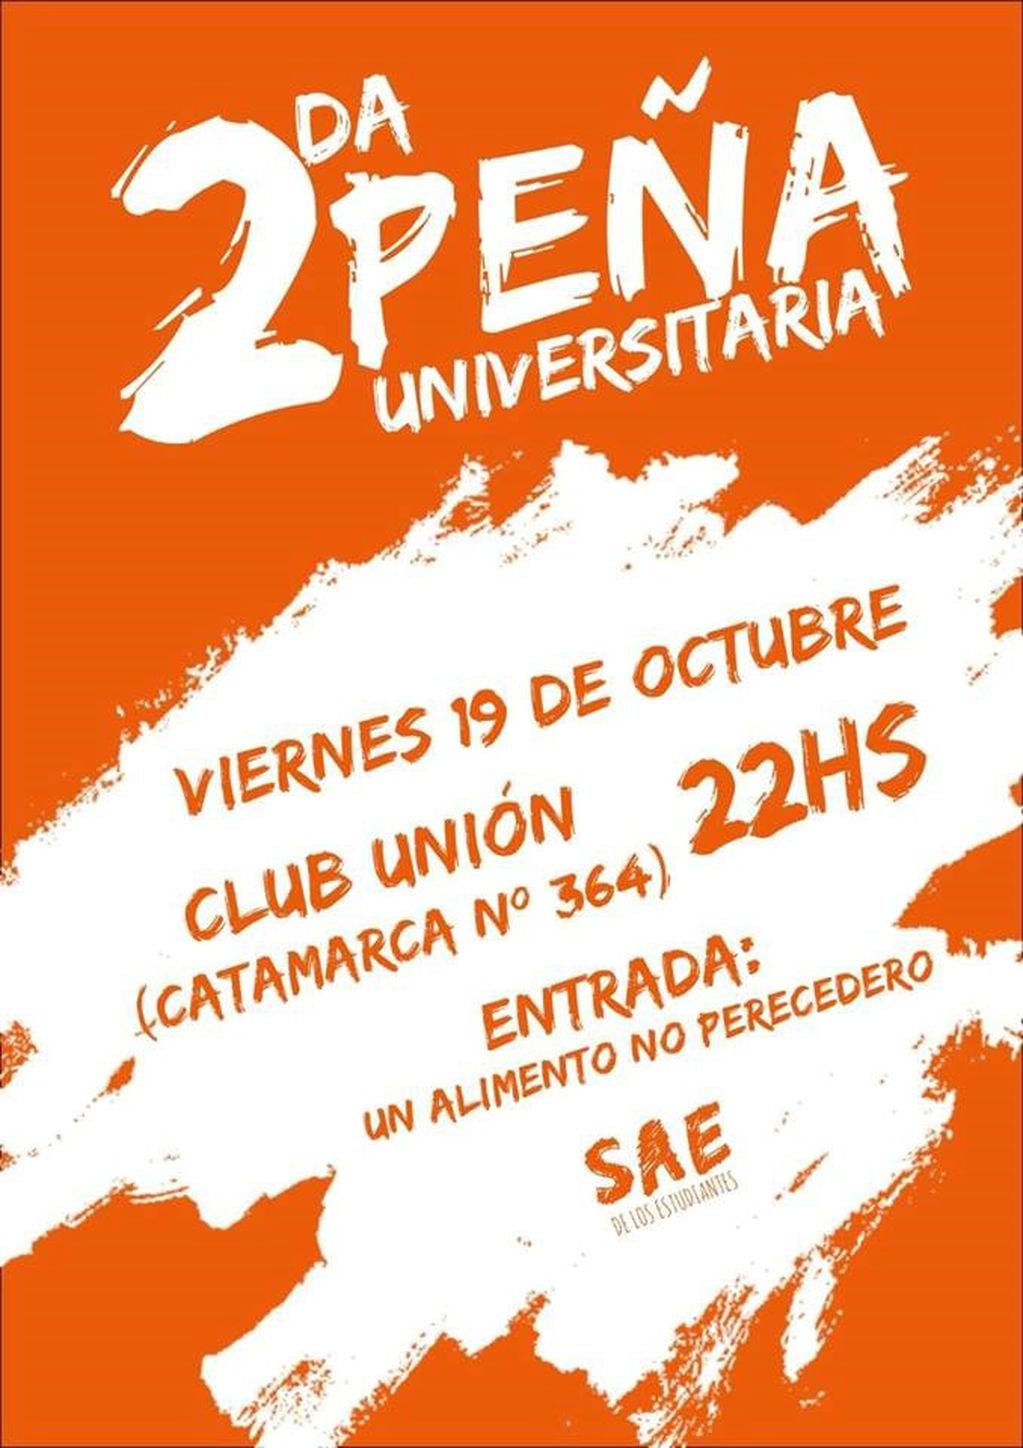 La 2° Peña Universitaria será en el Club Unión por calle Catamarca al 364